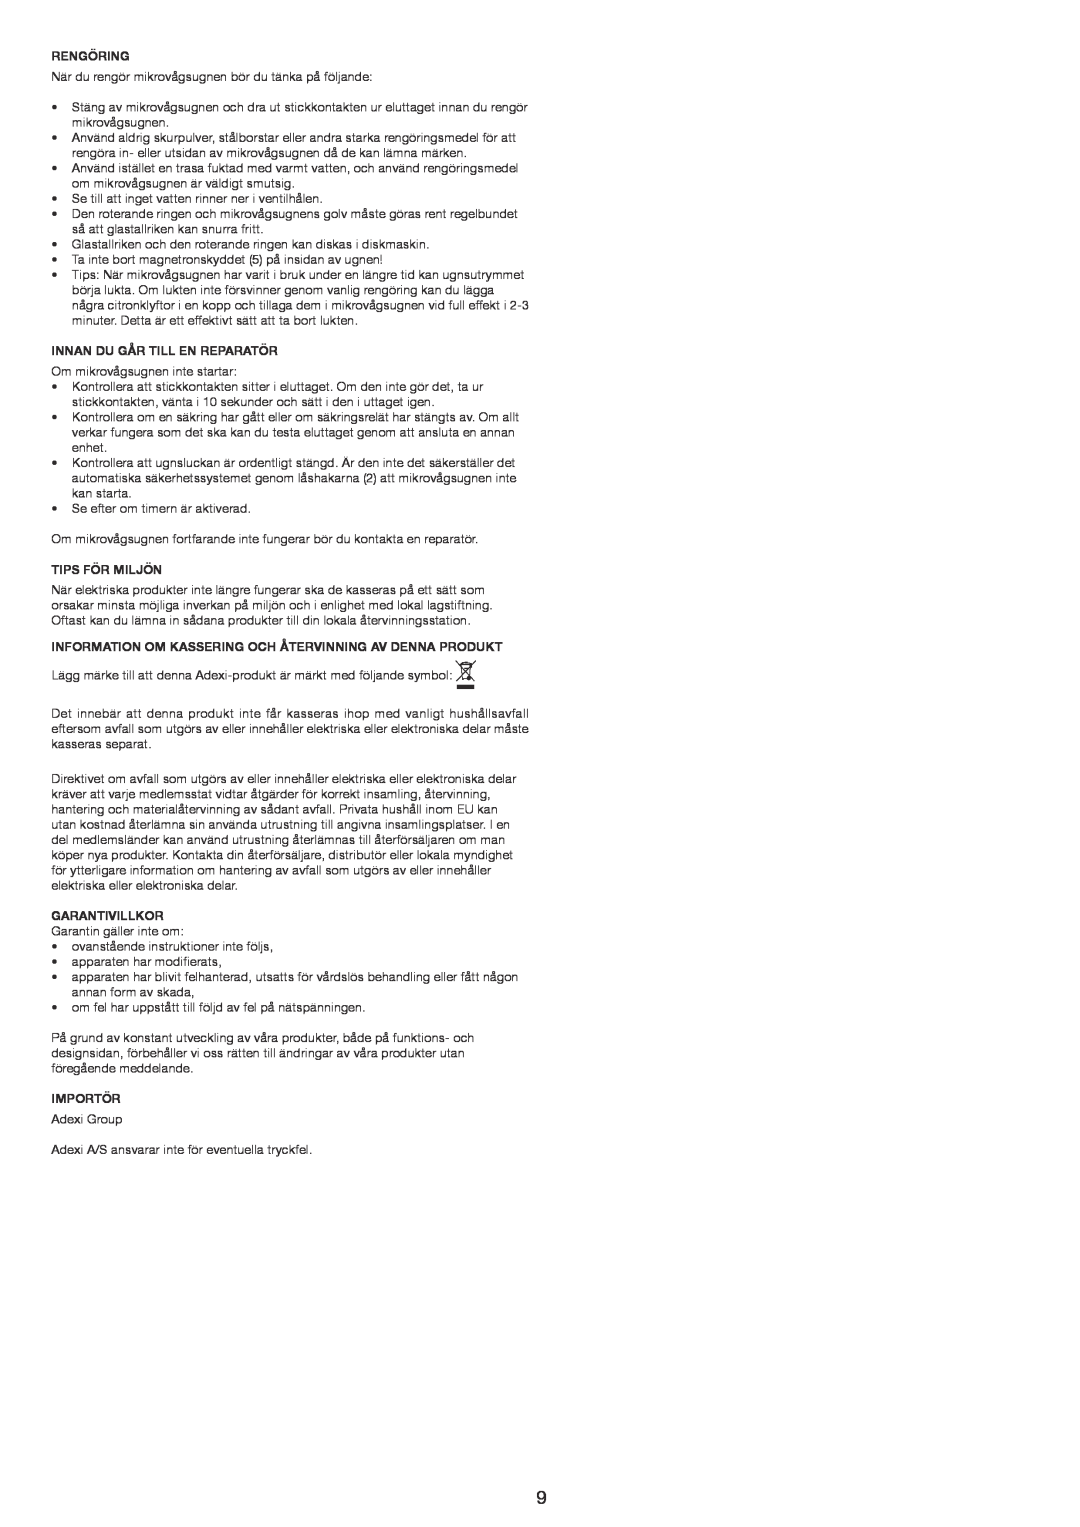 Melissa 753-121 manual Rengöring, Innan Du Går Till En Reparatör, Tips För Miljön, Garantivillkor, Importör 